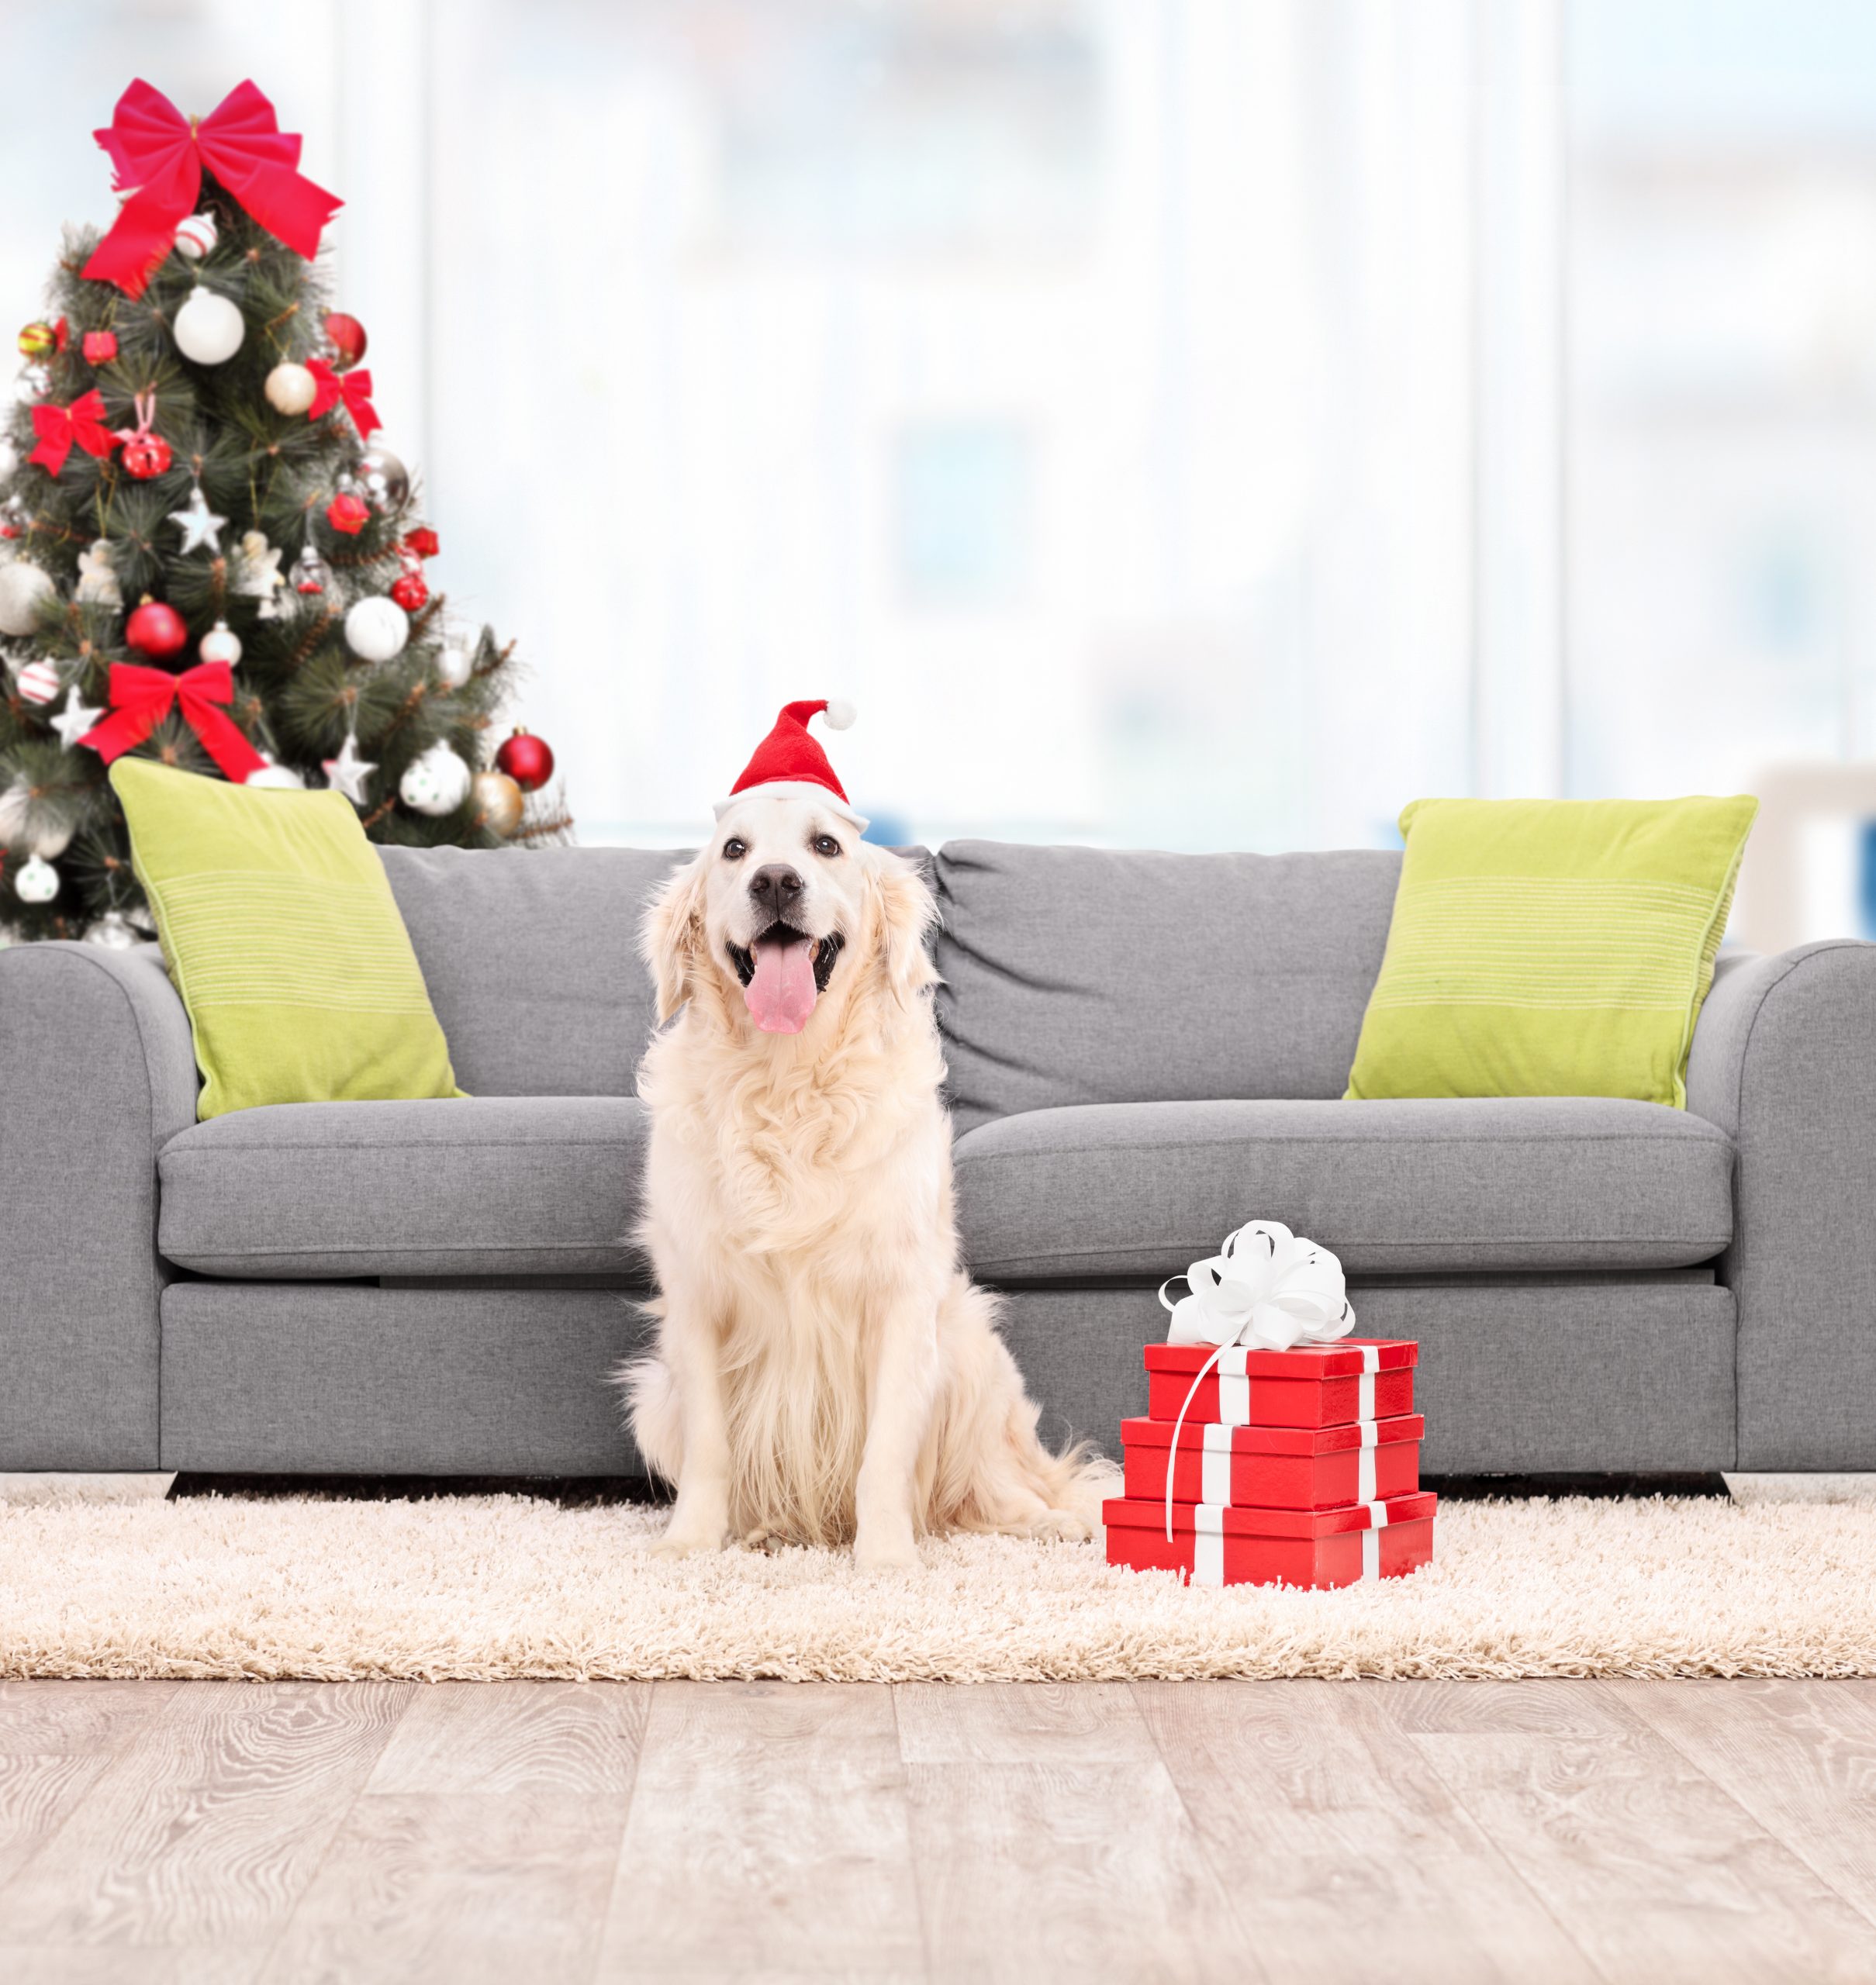 L’Importanza di avere un divano letto…soprattutto a Natale!